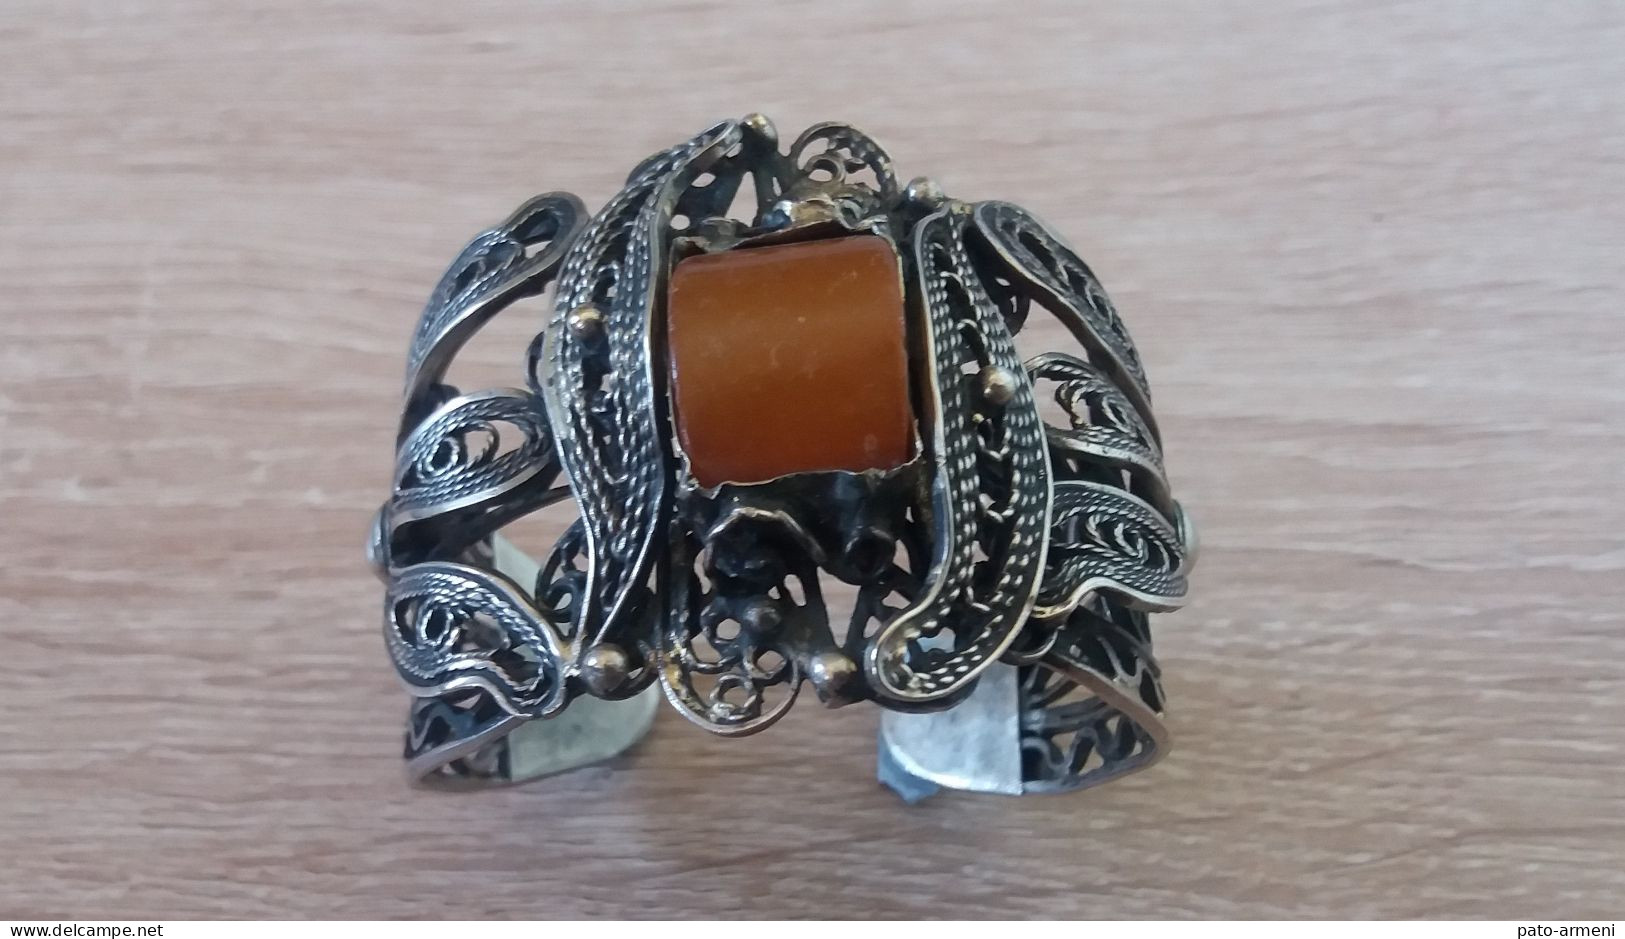 Ancien Bracelet à Poignet Filigrane Soviétique Arménien des Années 1960, Bracelet Arménien, Bracelet tribal ethnique